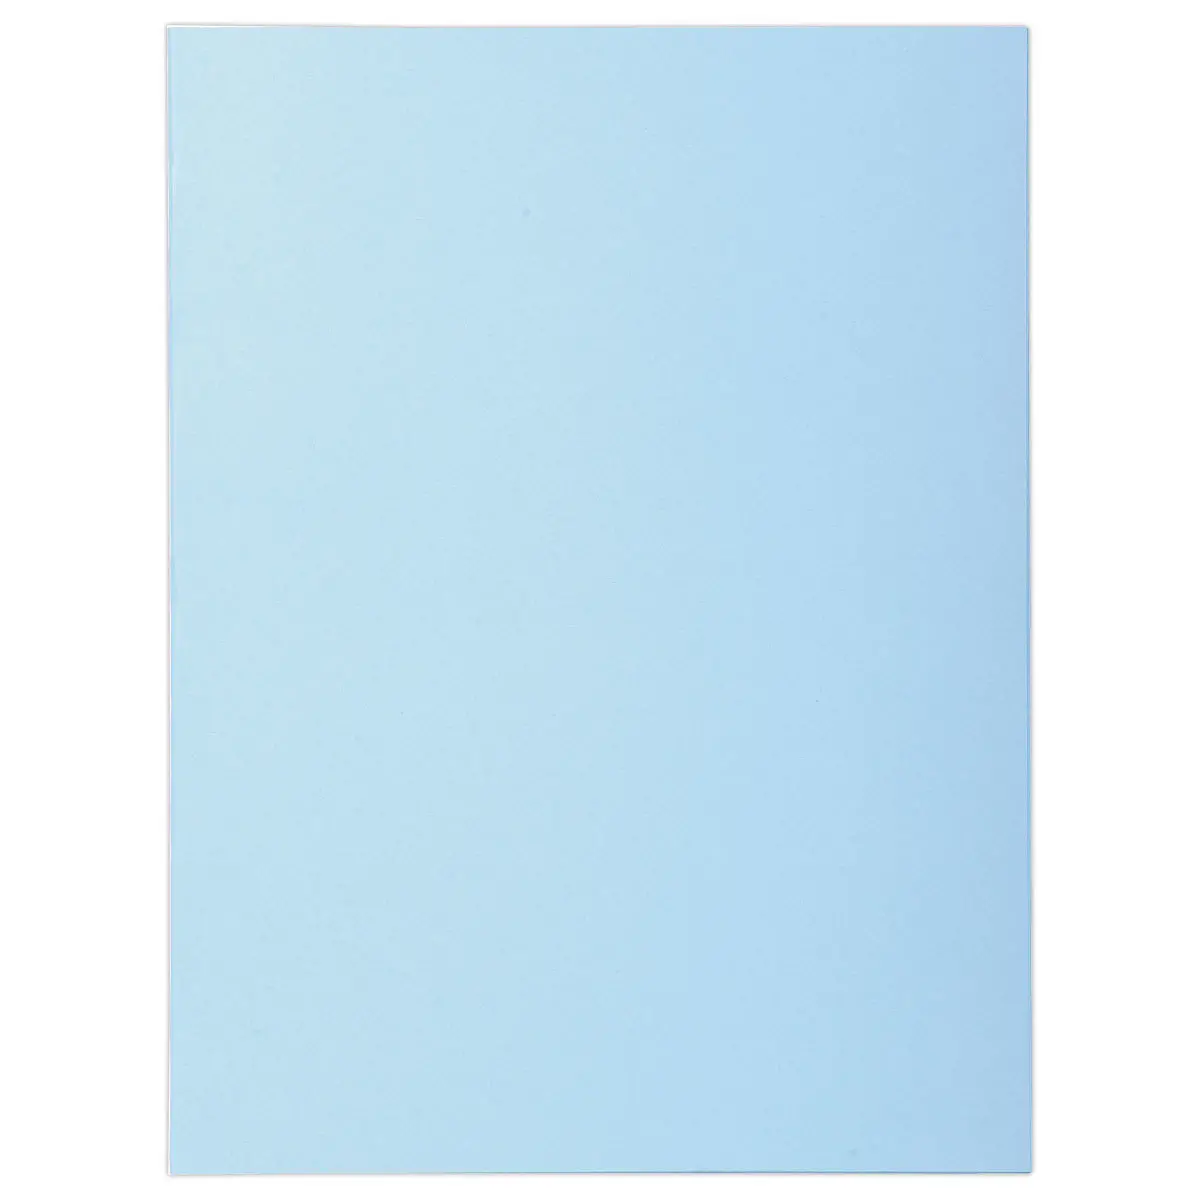 Lot de 100 Chemises FIDUCIAL Pastel 24x32 cm - 220g bleu clair photo du produit